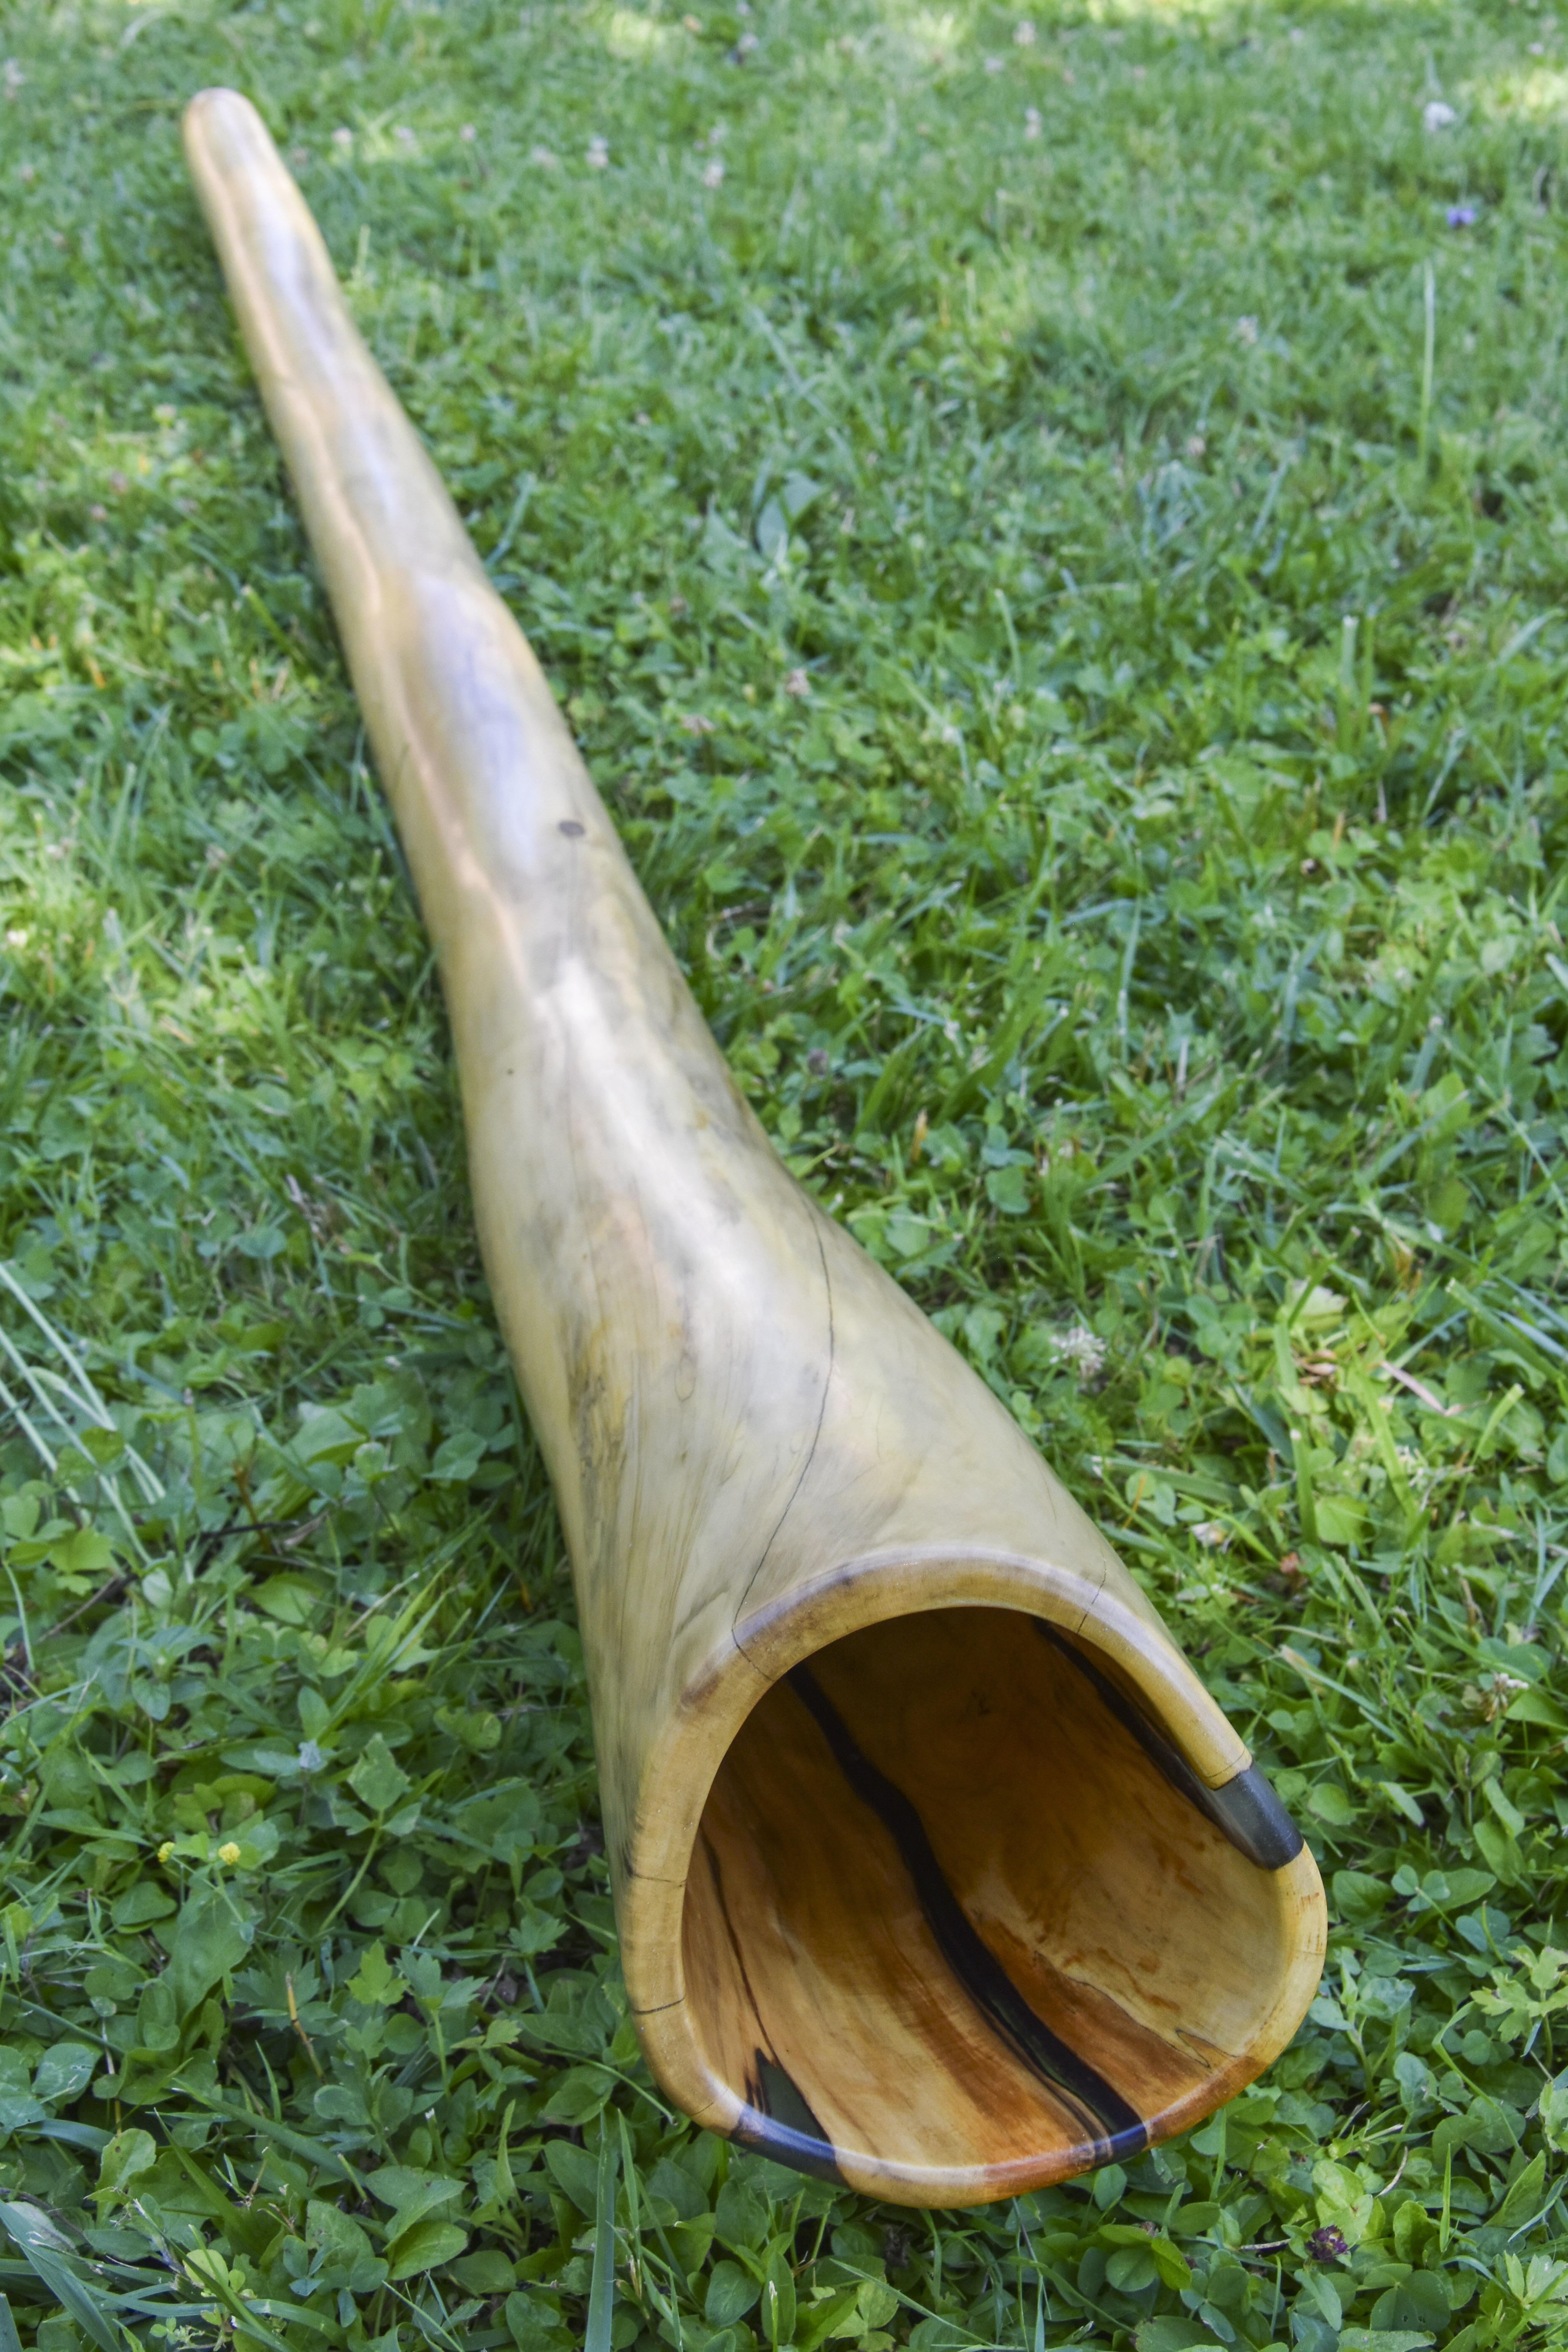  Didgerido nommé Garua, en La, légèrement courbé, fabriqué en bois de buis avec une cloche fissurées comblées de résine